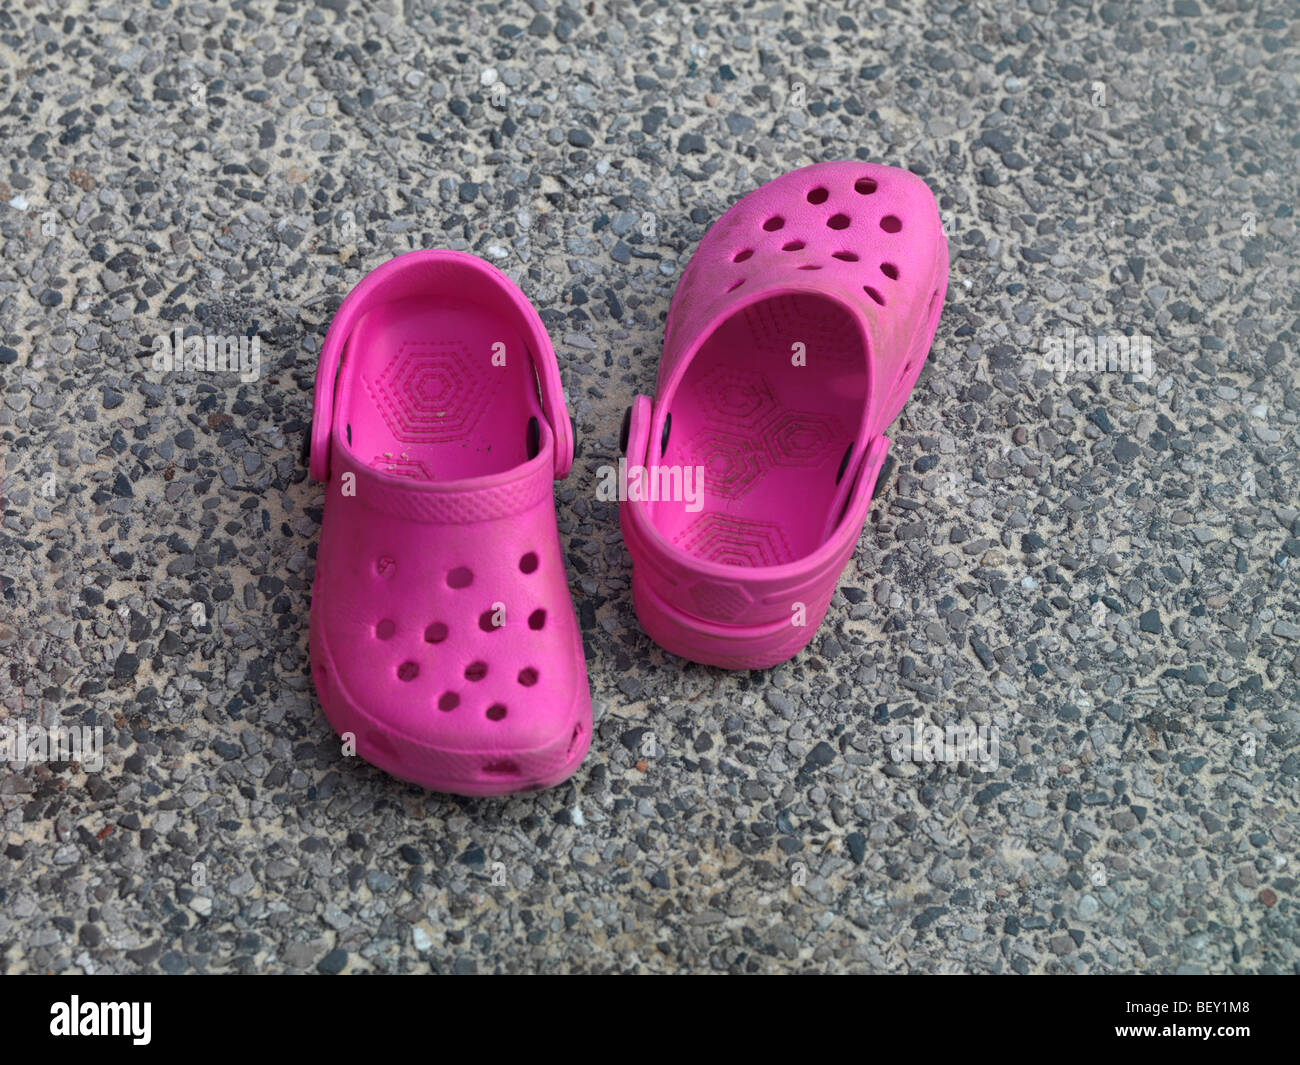 plastic shoes like crocs